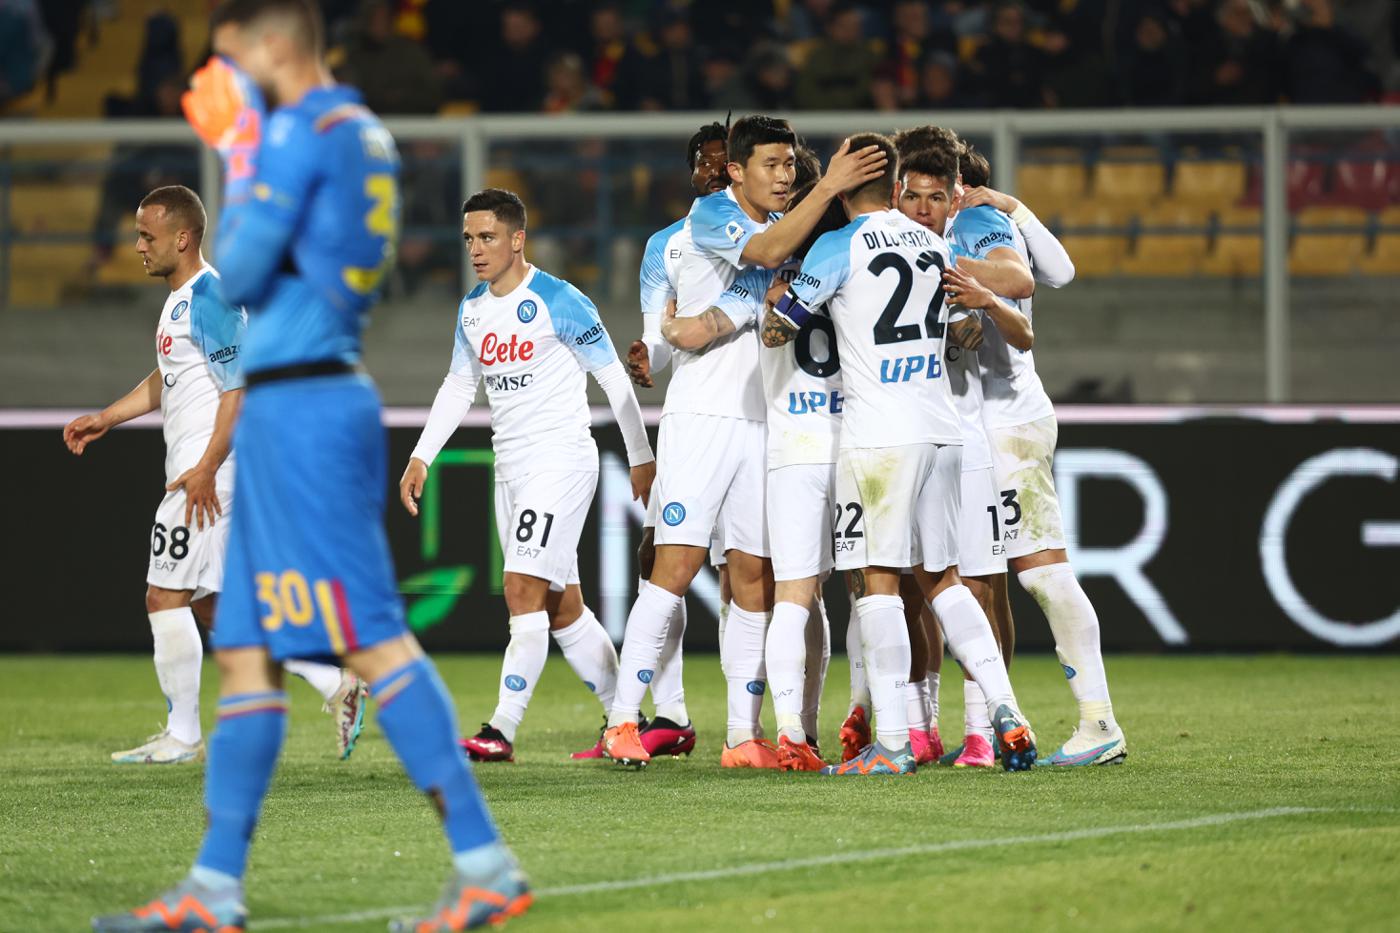 Lecce gegen Napoli - 1:2. Italienische Meisterschaft, 29. Runde. Spielbericht, Statistik